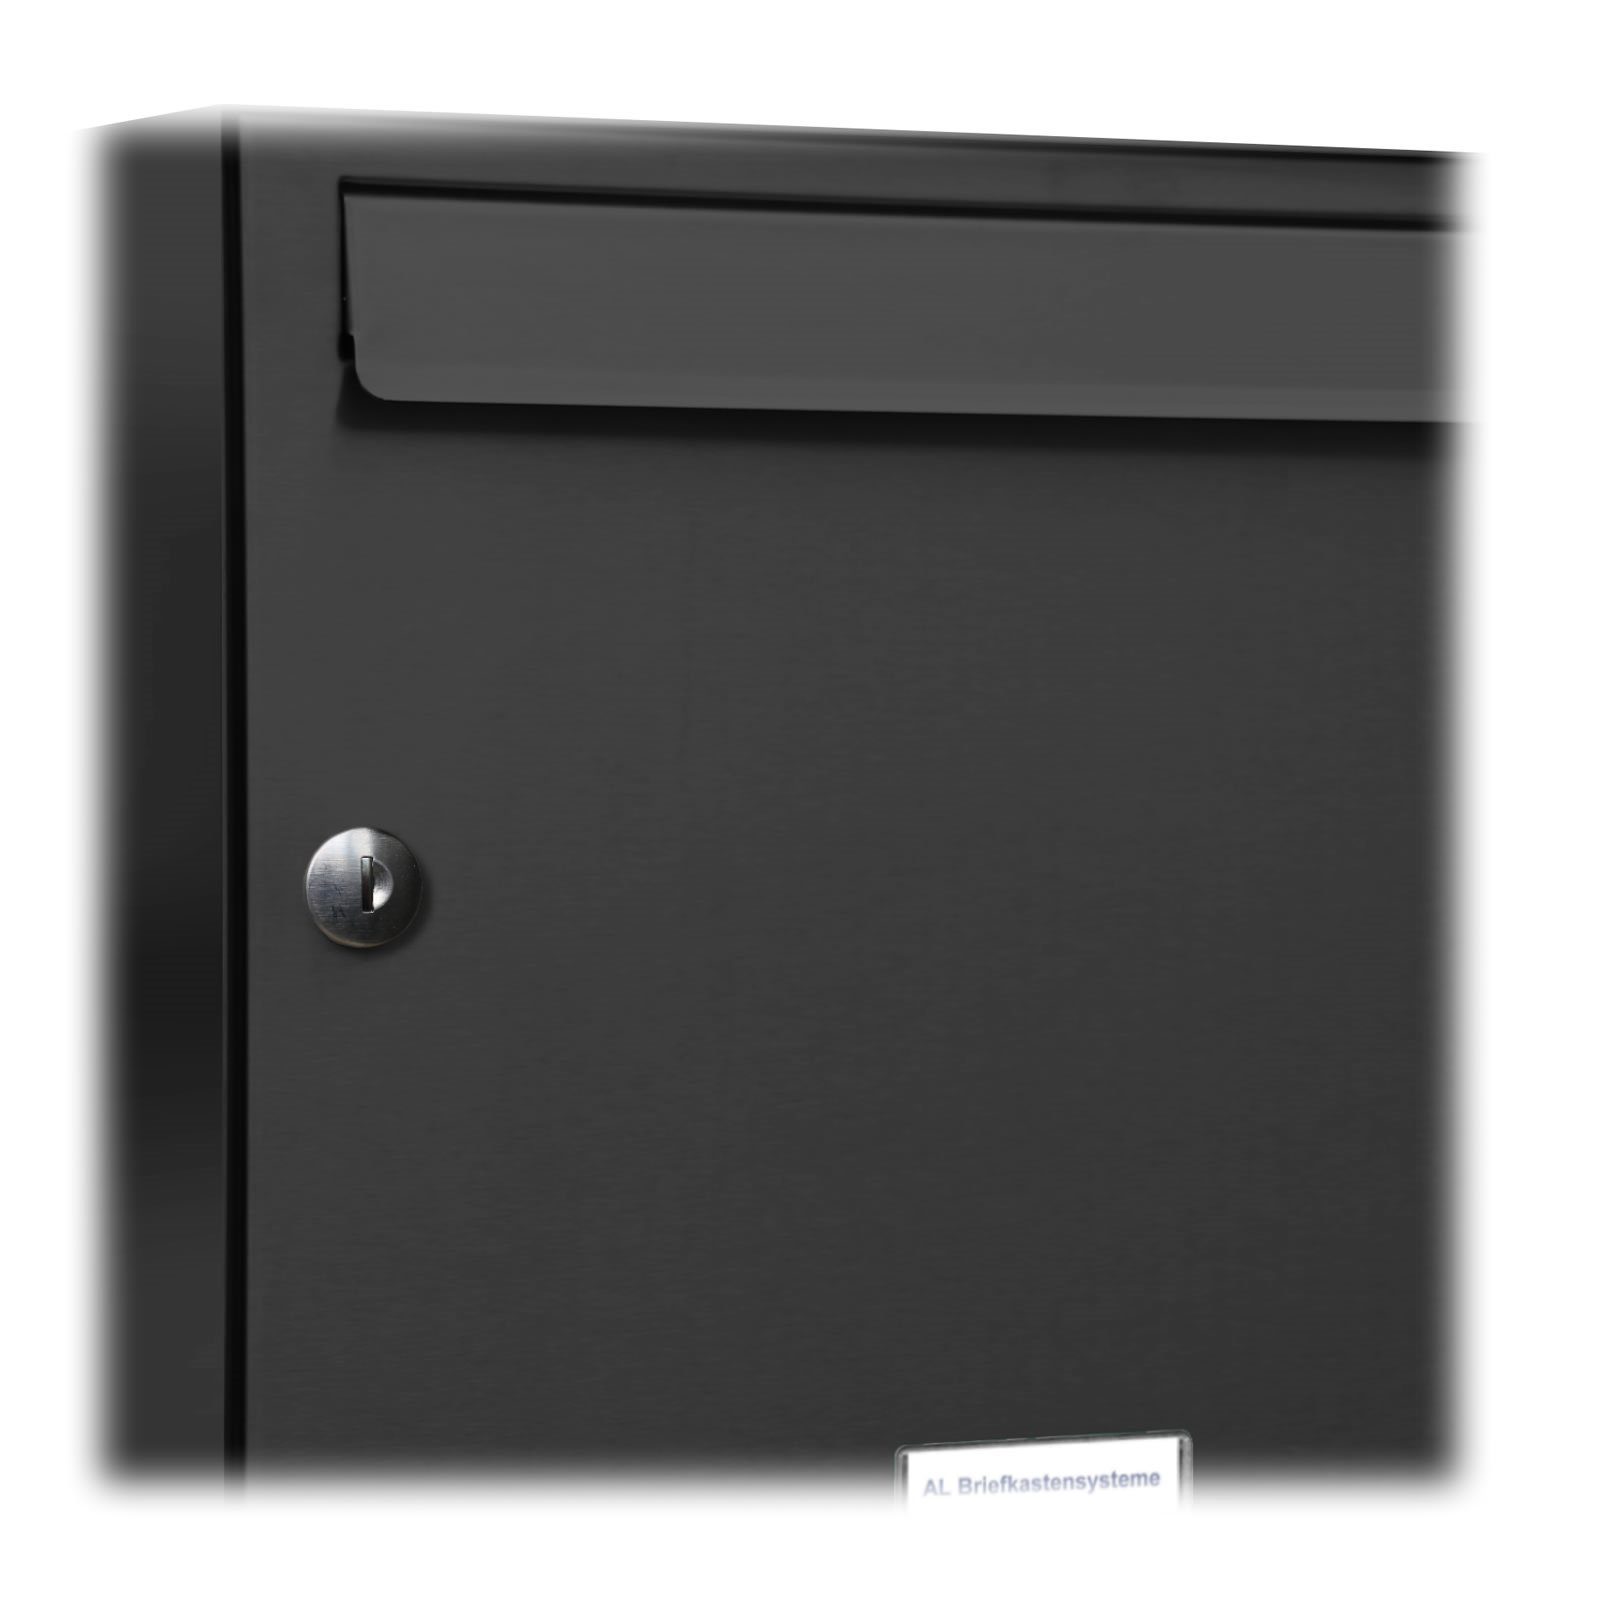 Farbe Briefkasten RAL AL Rechts 7016 6er Briefkastensysteme Außen 3x2 Premium Klingel Wandbriefkasten